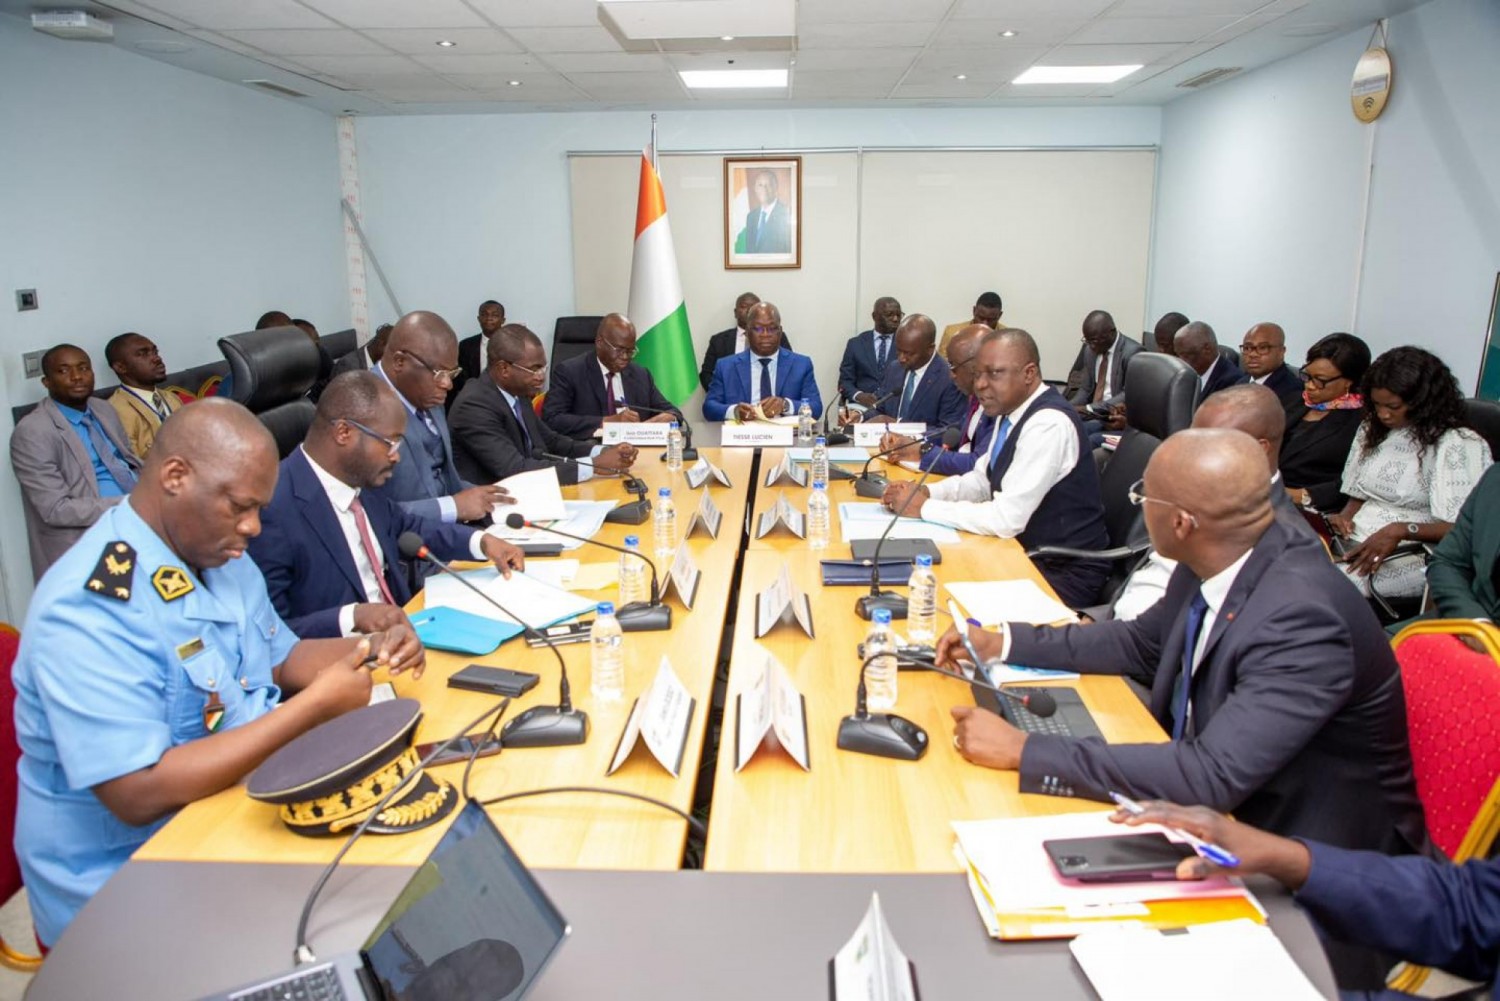 Côte d'Ivoire : CAN 2023, réunion conjointe entre les Ministres Amédé Kouakou et Amadou Koné sur le Transport et la Mobilité urbaine pendant la compétition